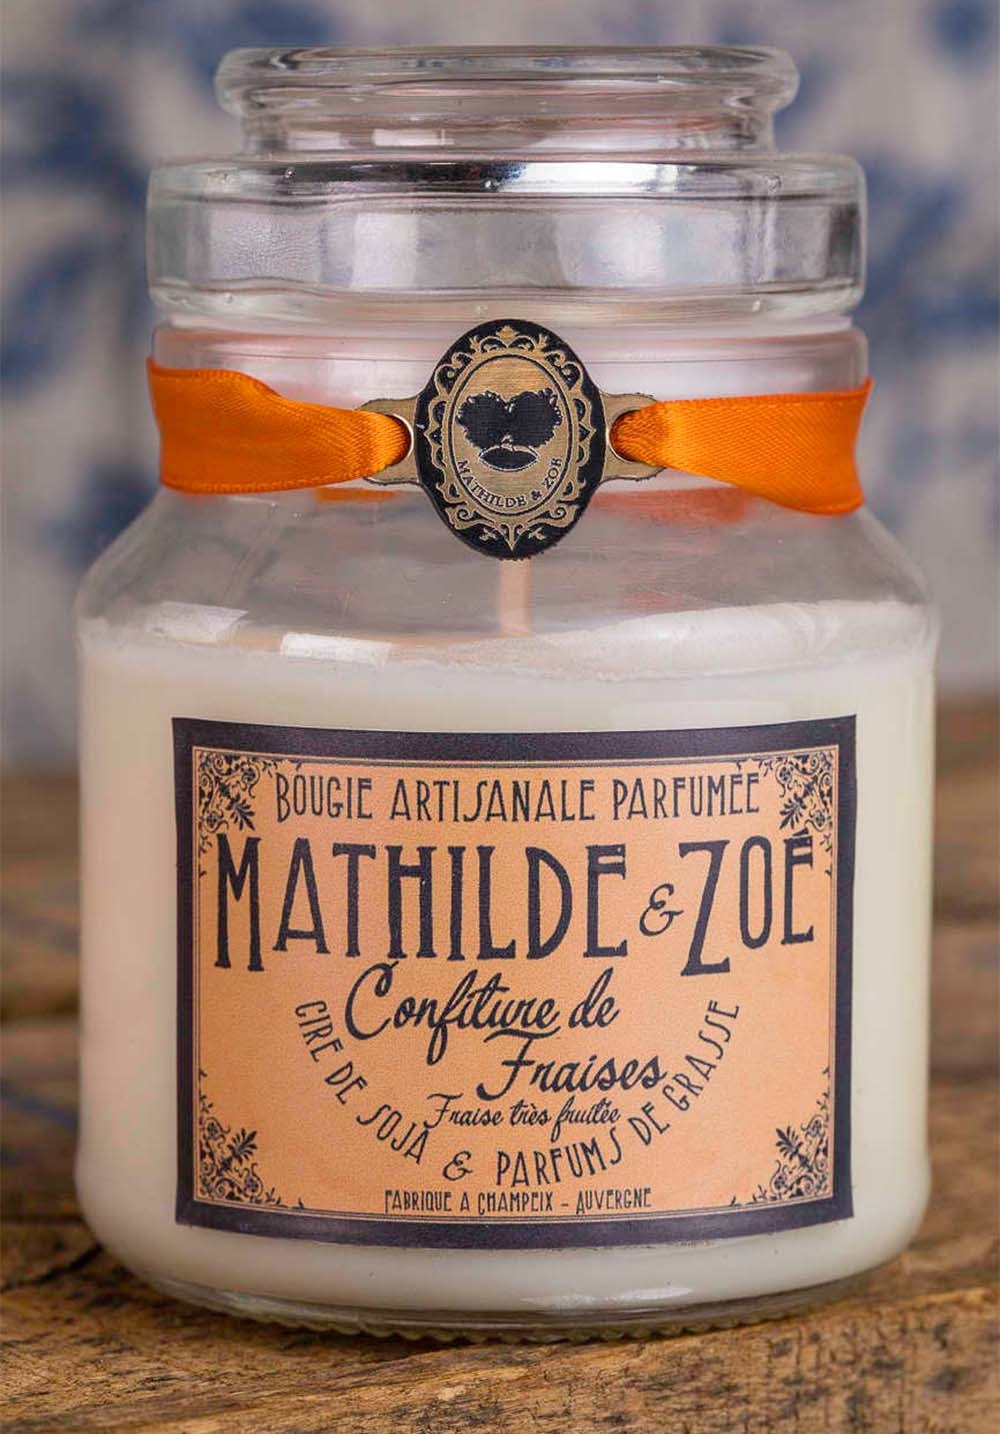 Bougie artisanale parfumée Mathilde et Zoé - Confiture de fraises